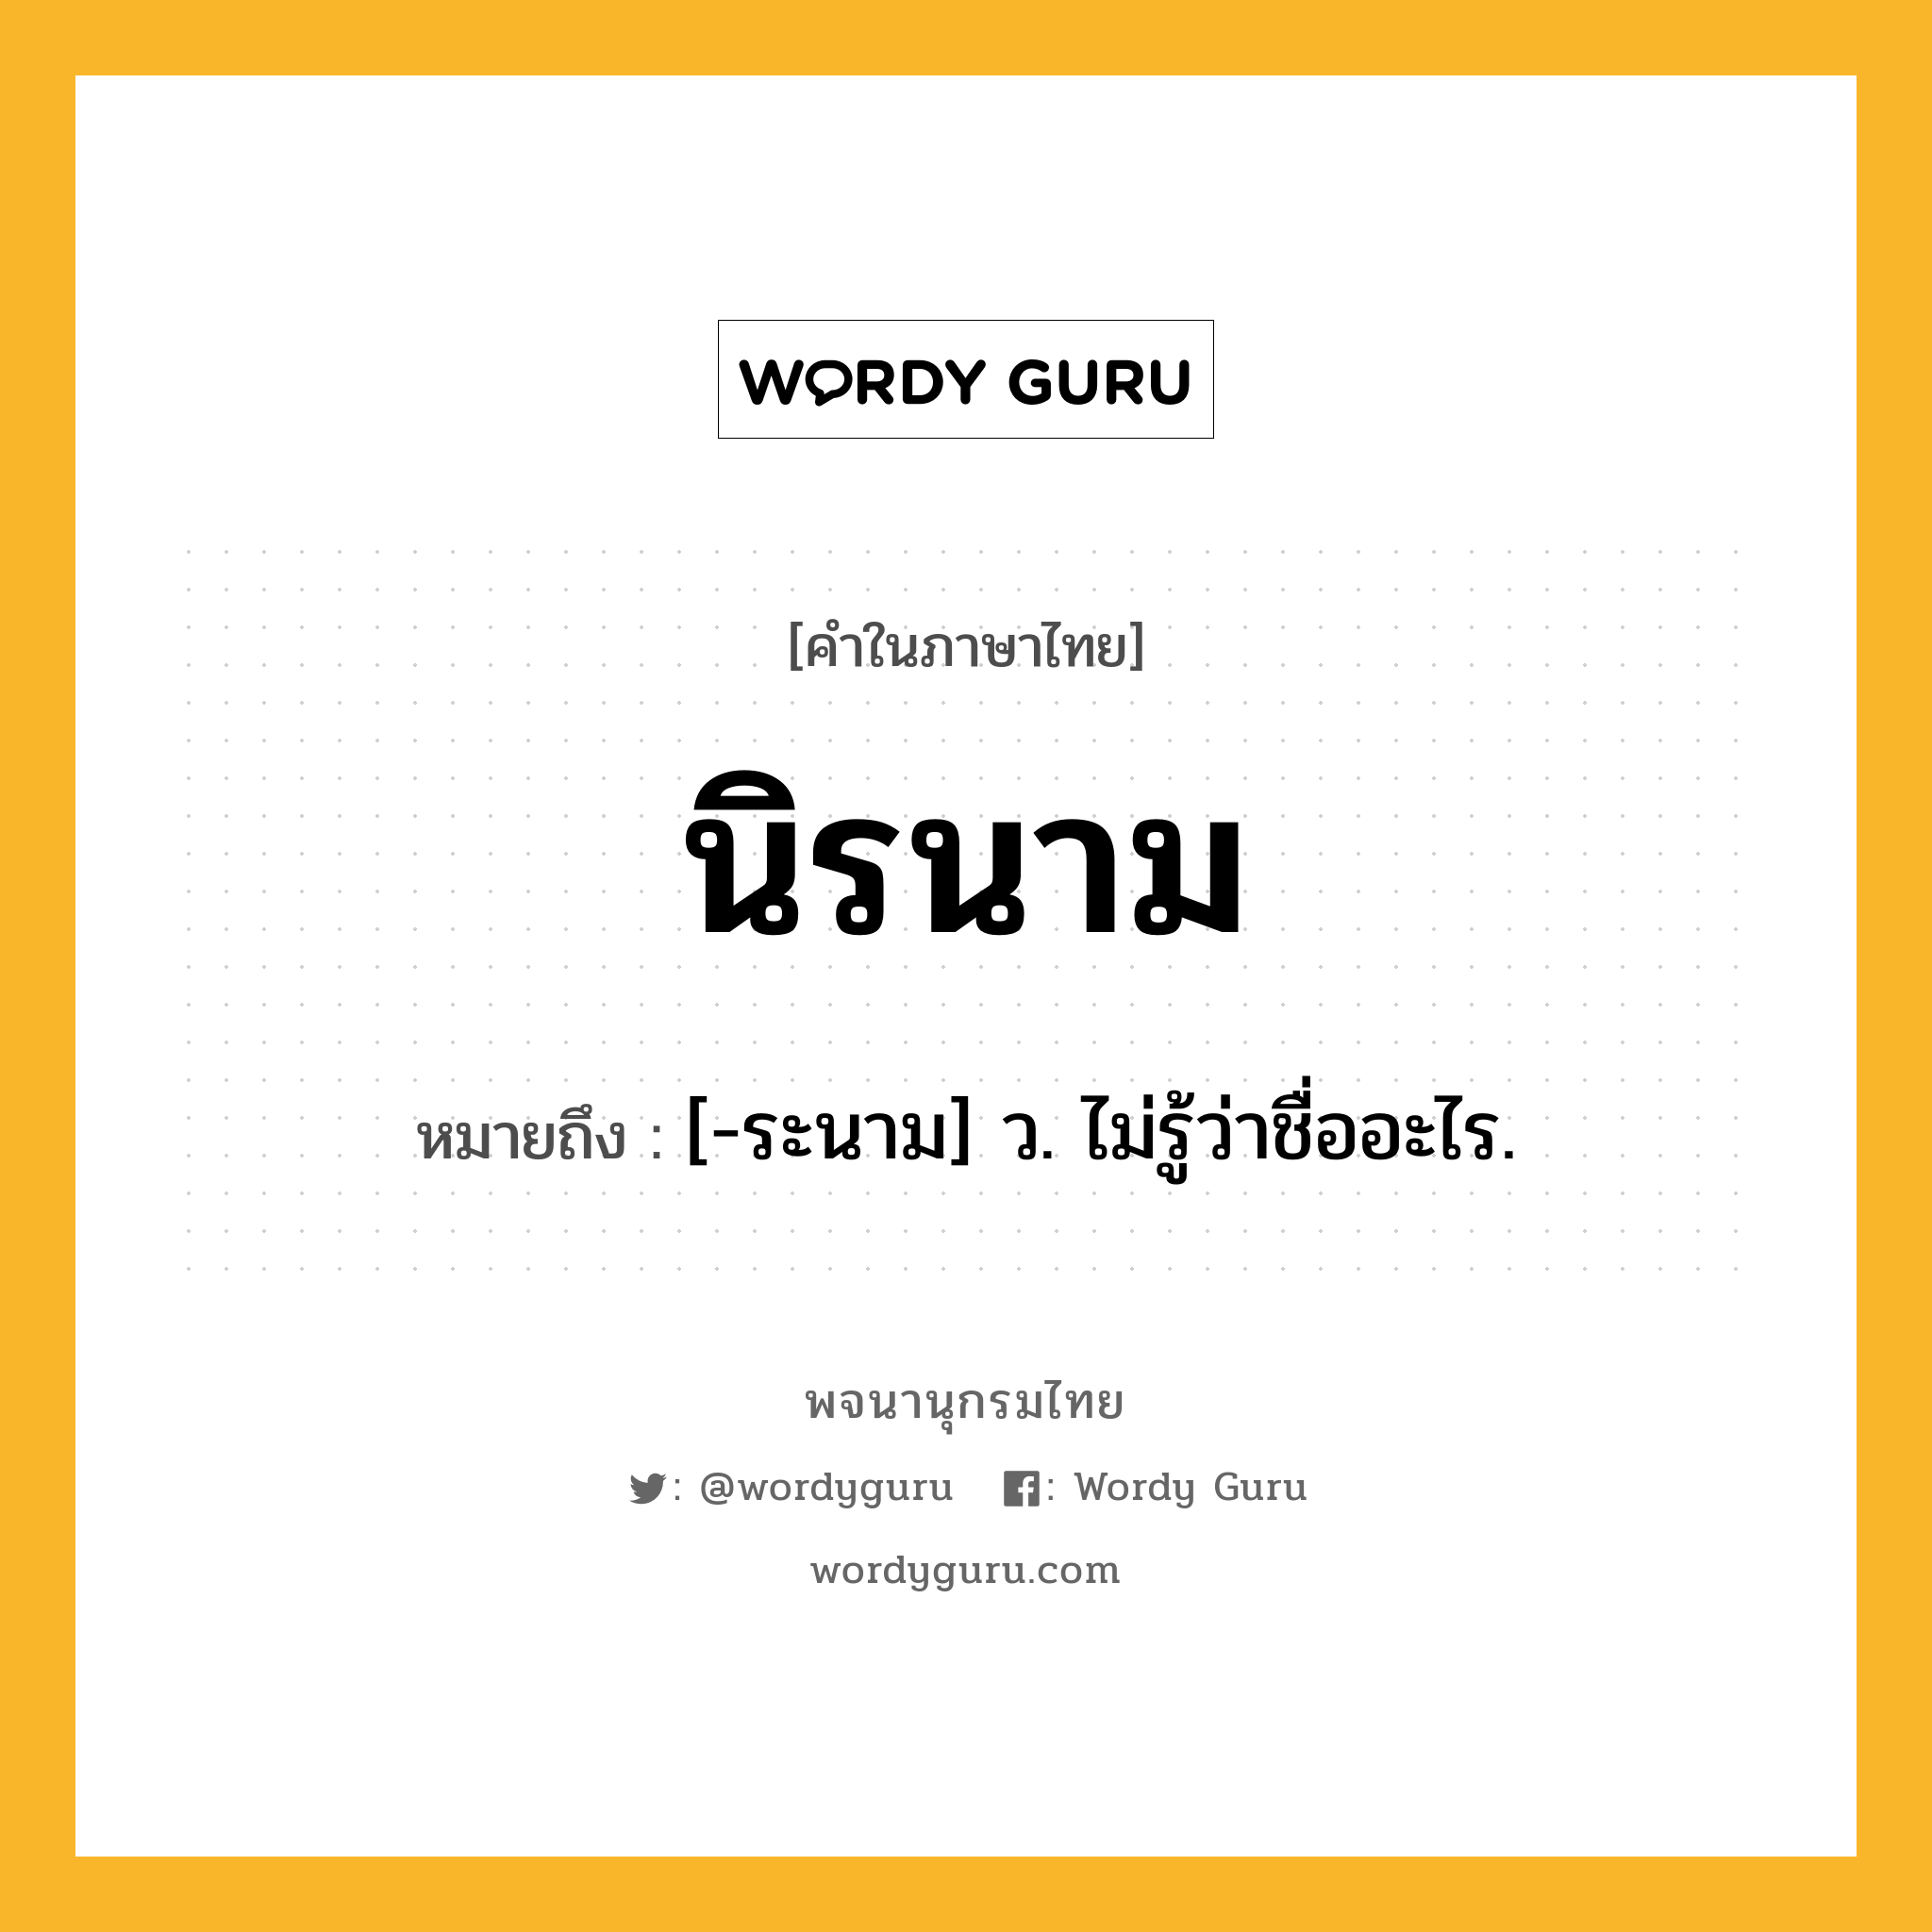 นิรนาม ความหมาย หมายถึงอะไร?, คำในภาษาไทย นิรนาม หมายถึง [-ระนาม] ว. ไม่รู้ว่าชื่ออะไร.